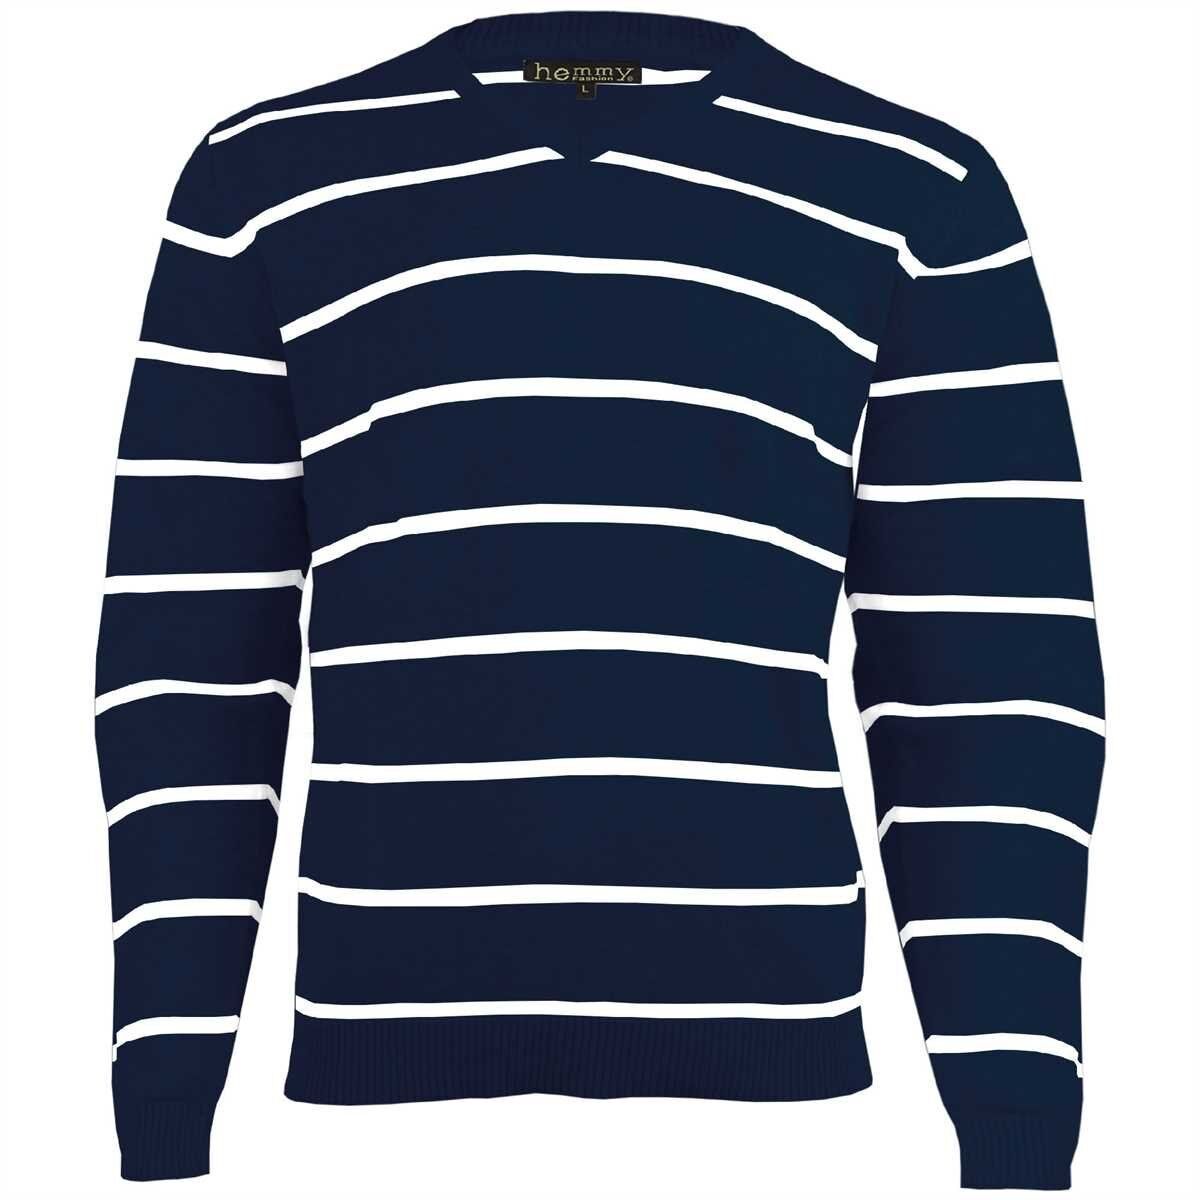 hemmy Fashion Streifenpullover Sweater Pulli Herrenpullover mit weißen Streifen, versch. Ausführungen und Größen, Blau